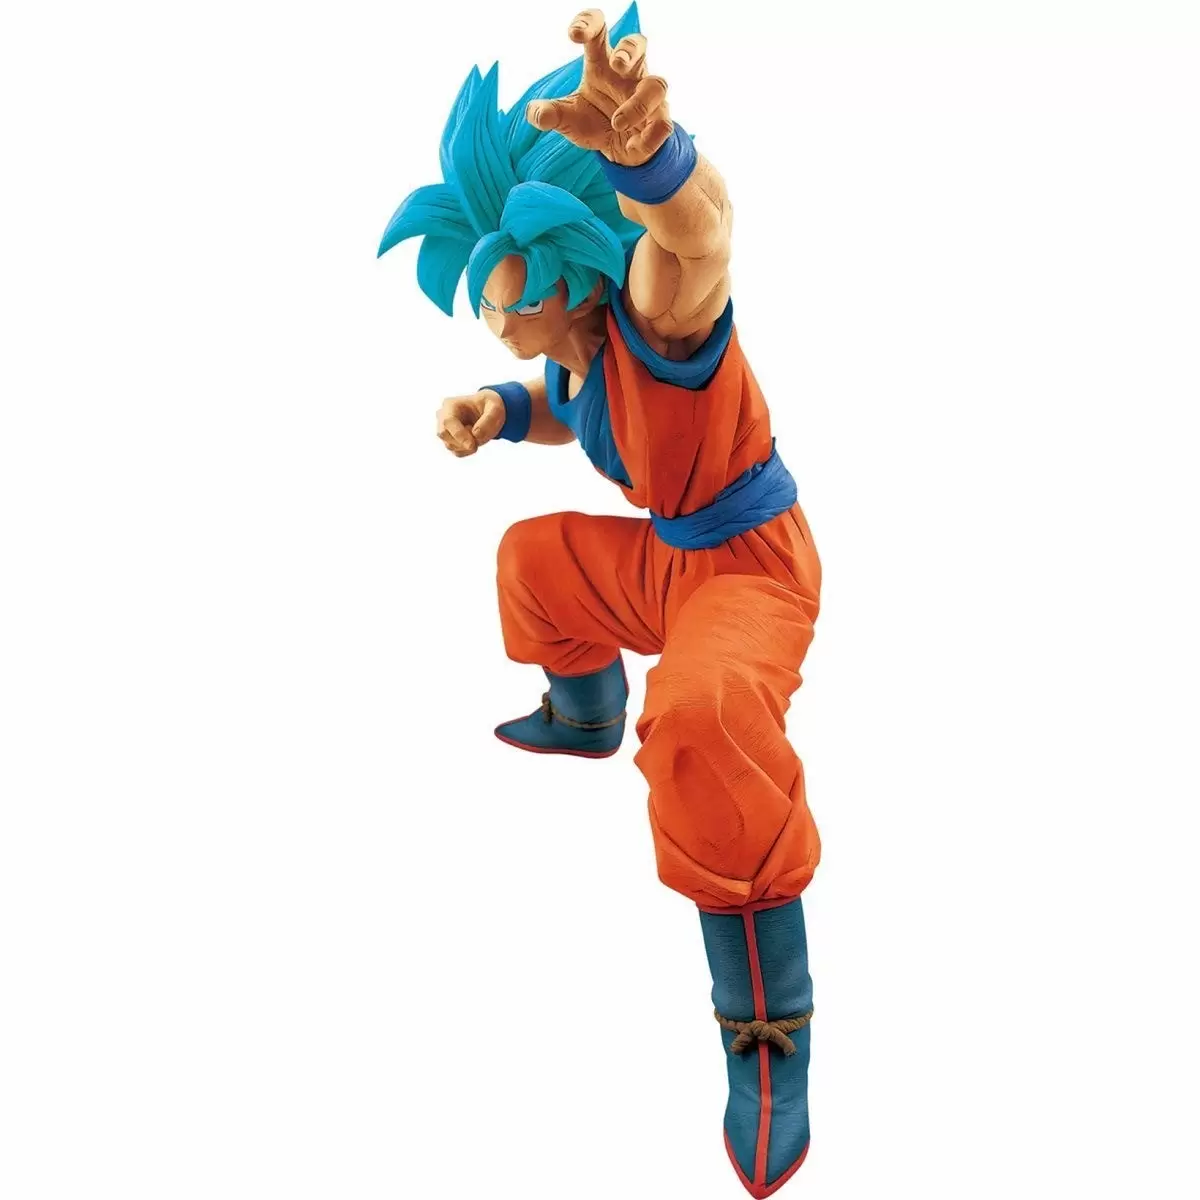 Dragon Ball Banpresto - Super Saiyan God Super Saiyan Goku Big Size Figure